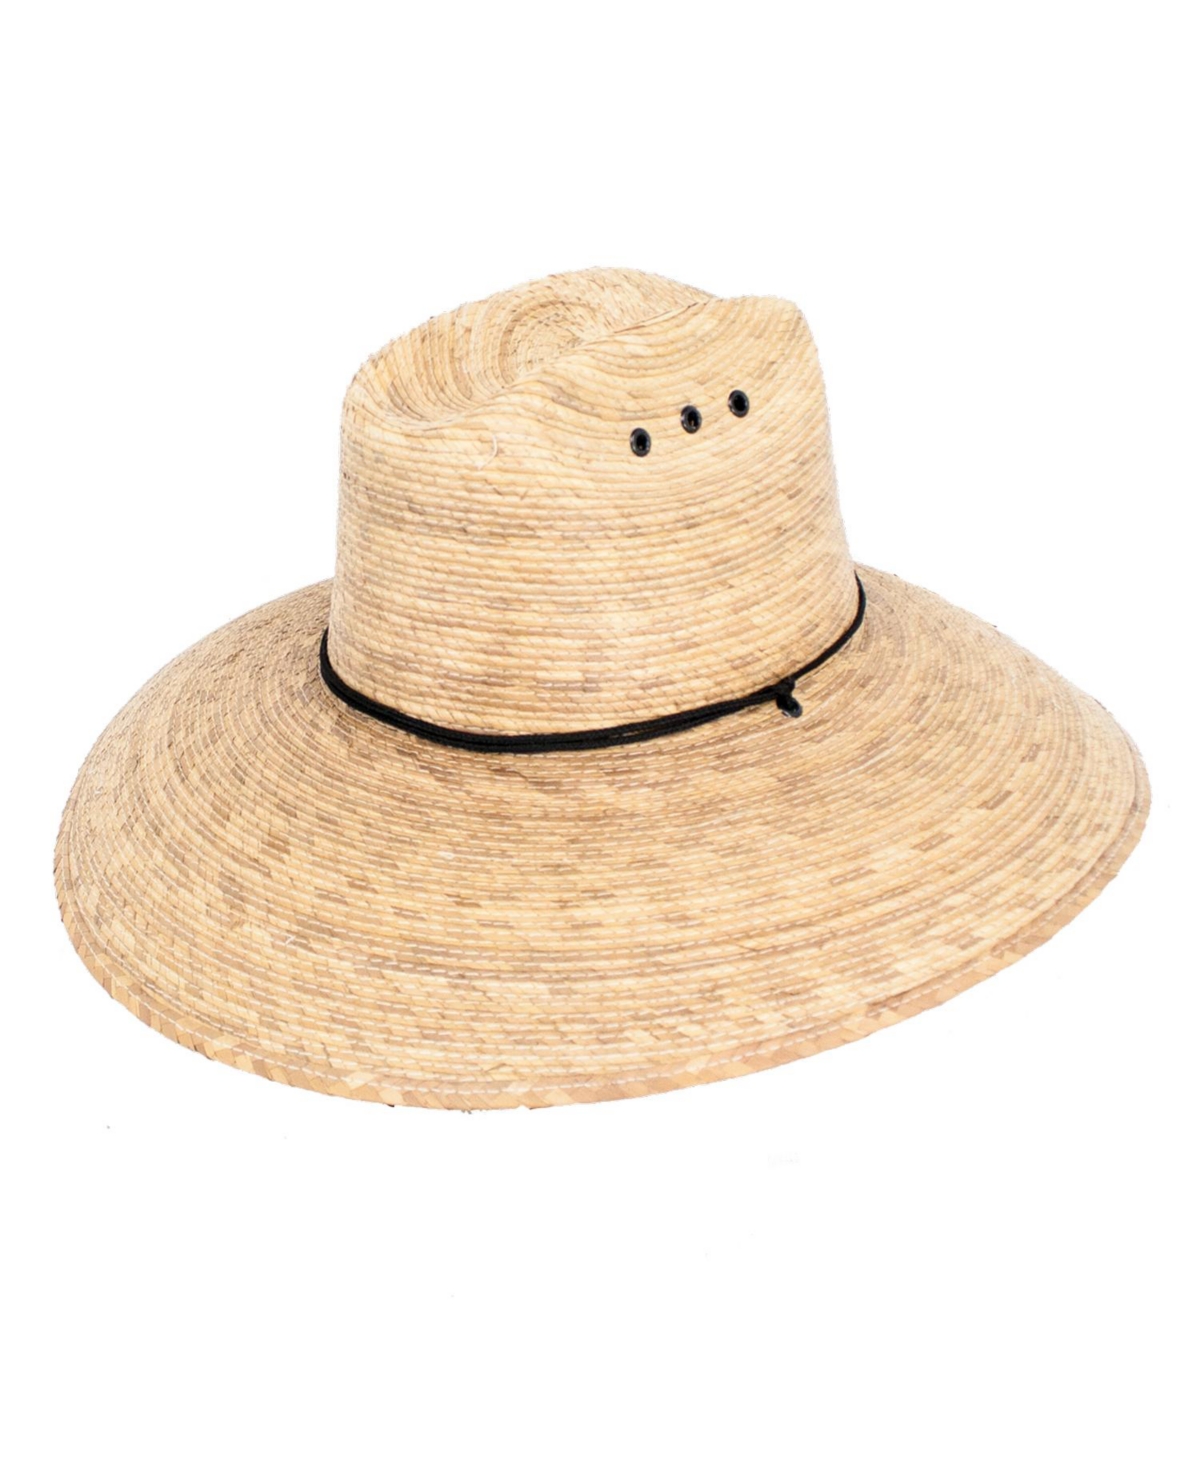 Huron Straw Lifeguard Hat - Natural